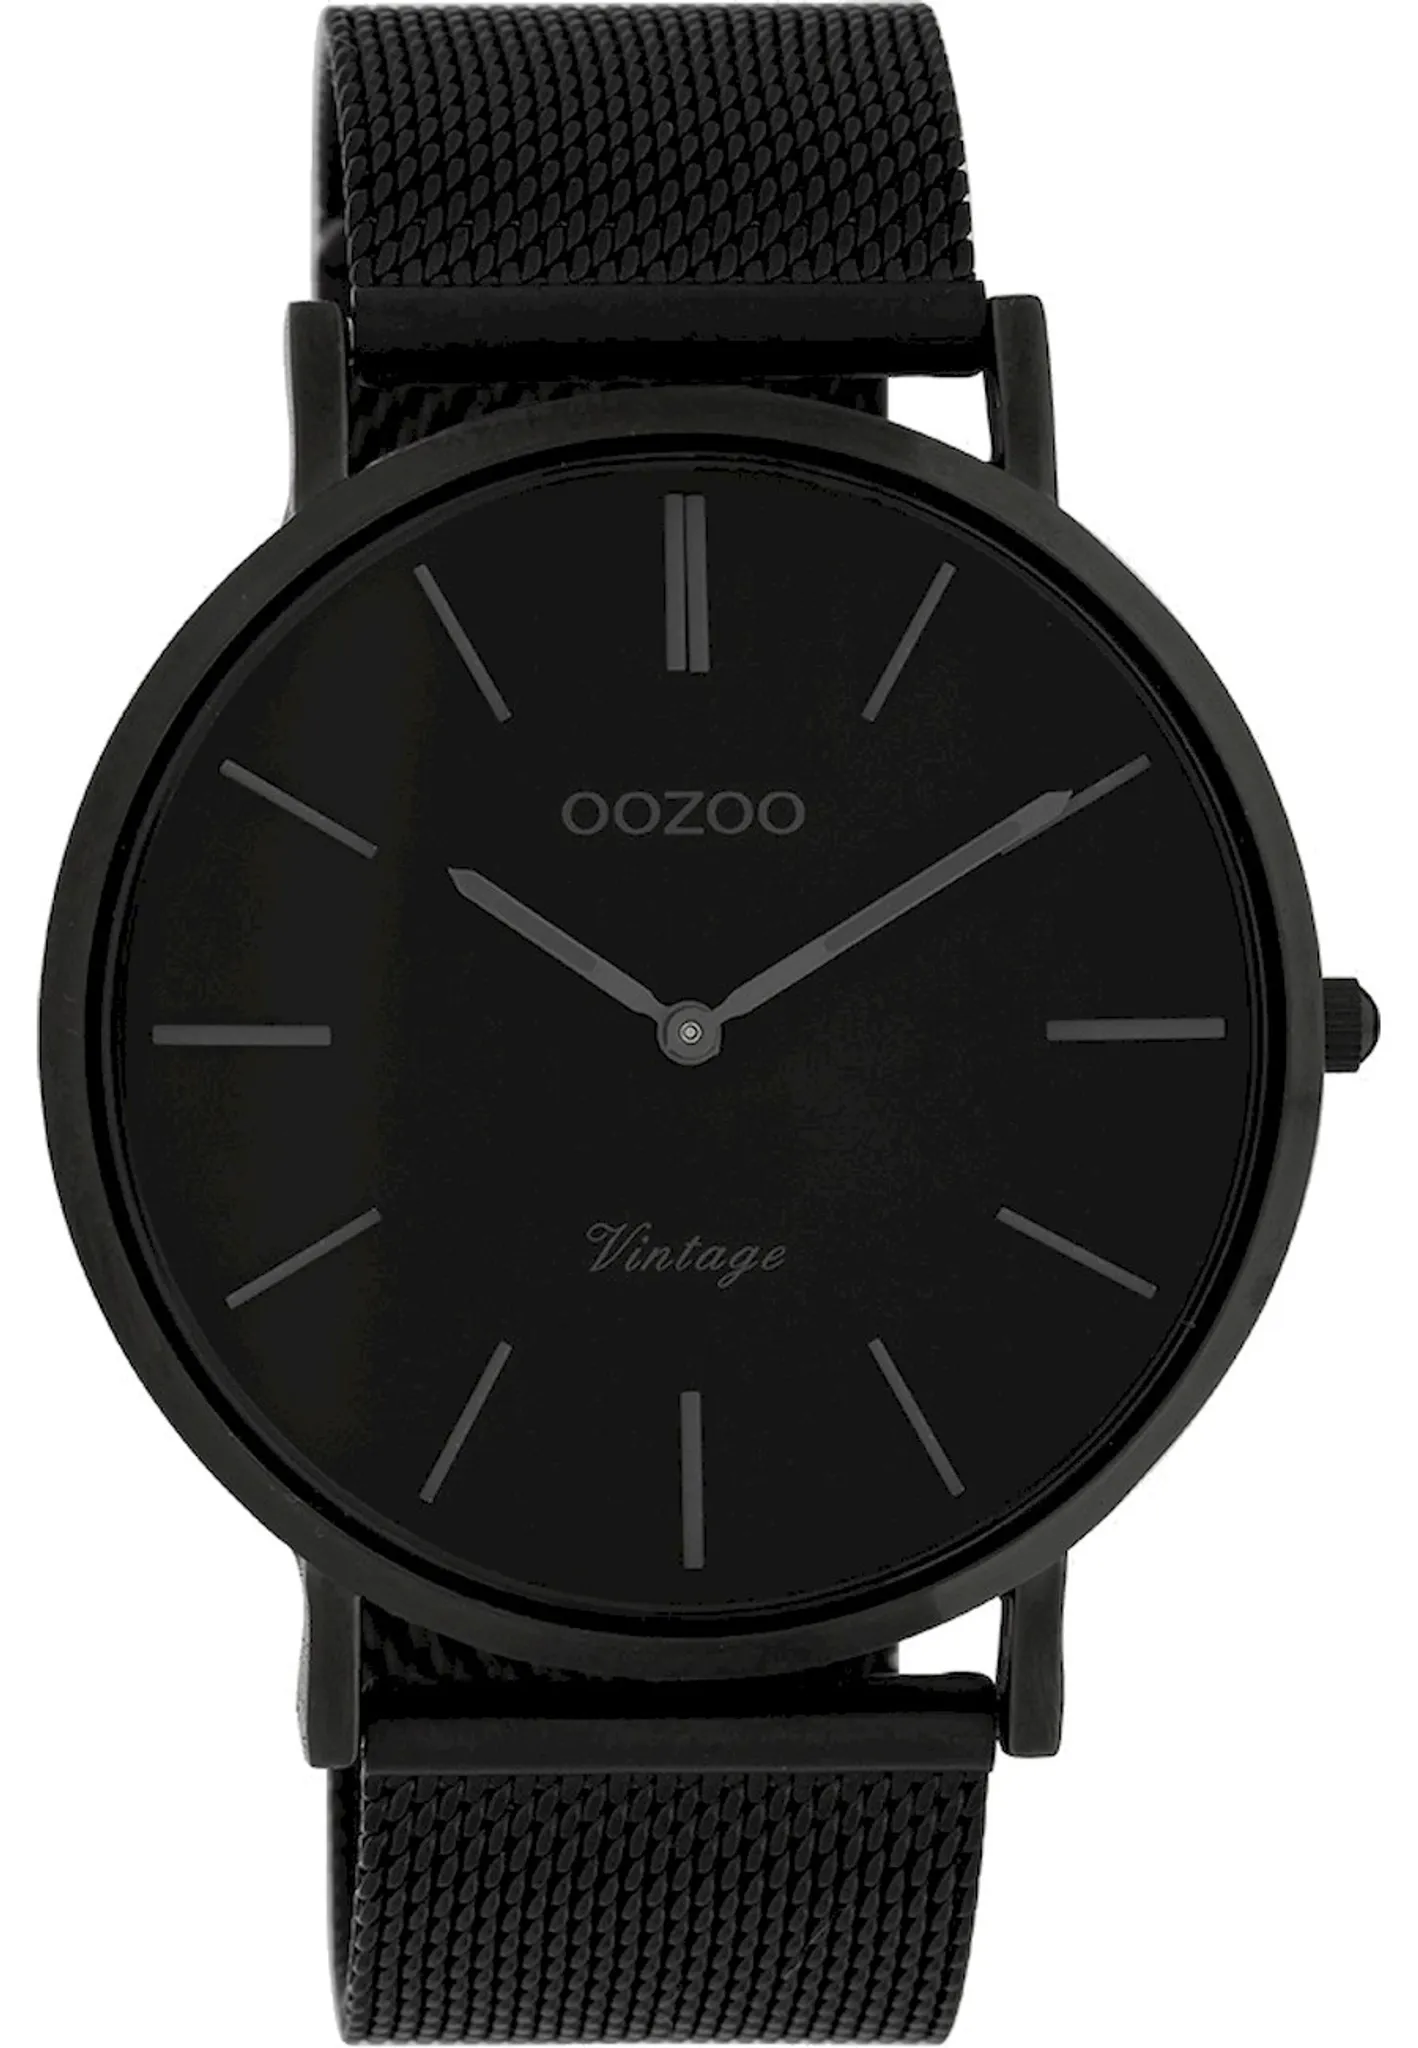 Herrenuhr Armbanduhr C9932 Oozoo Vintage